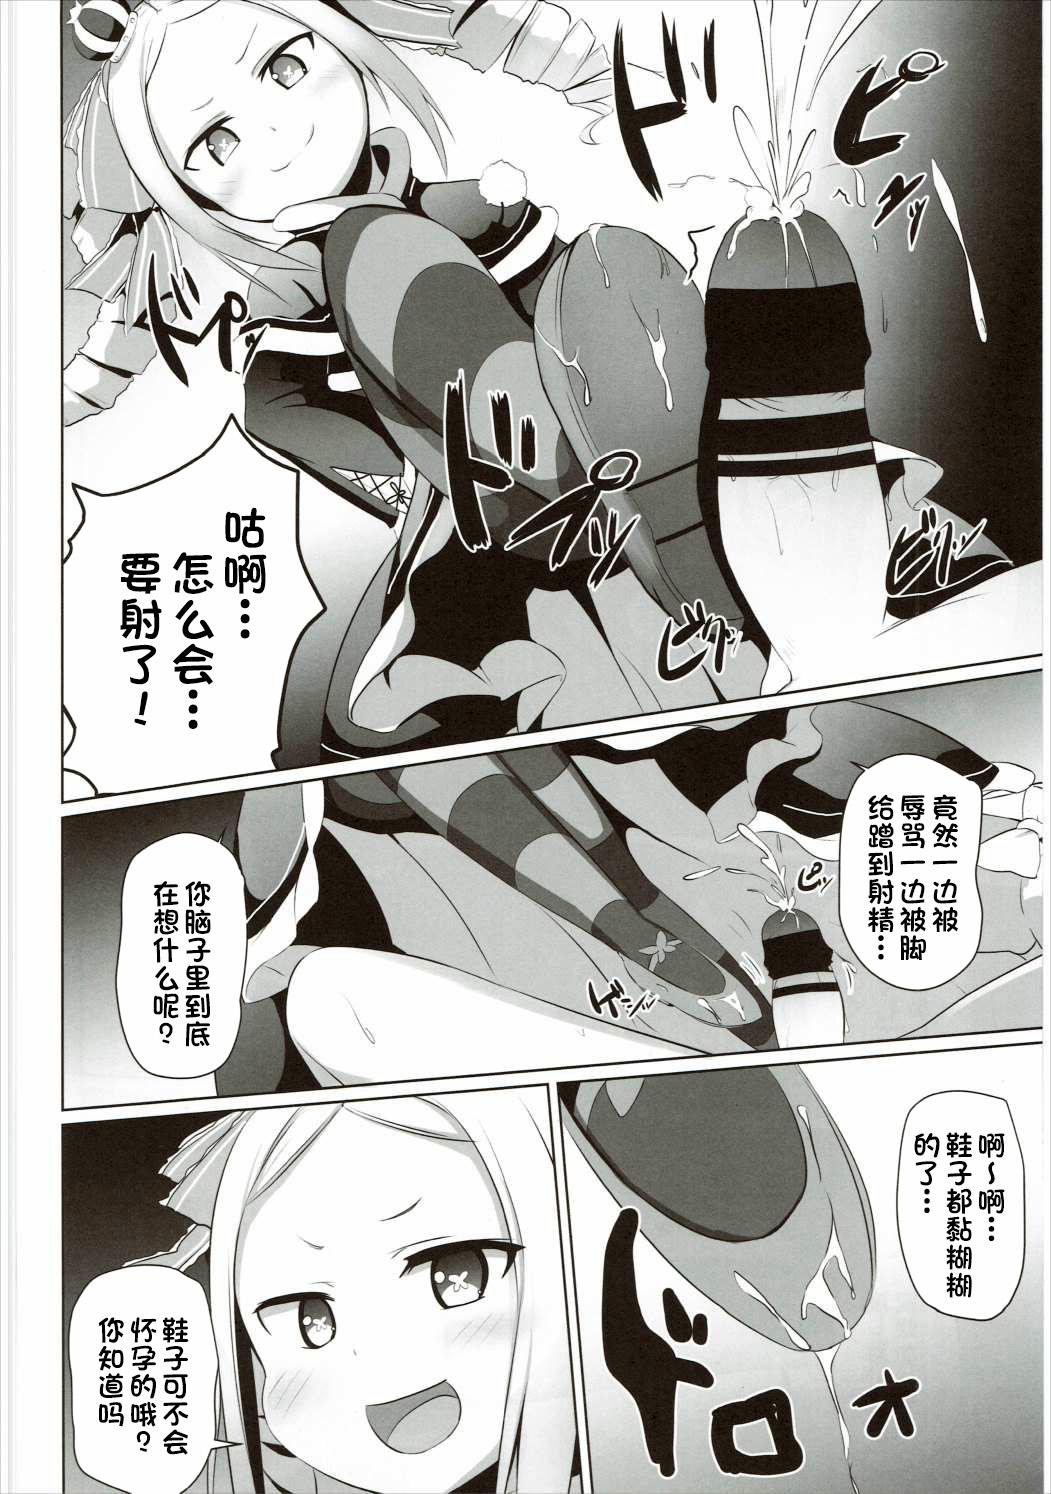 Little Omae Namaiki kashira!! - Re zero kara hajimeru isekai seikatsu Students - Page 7